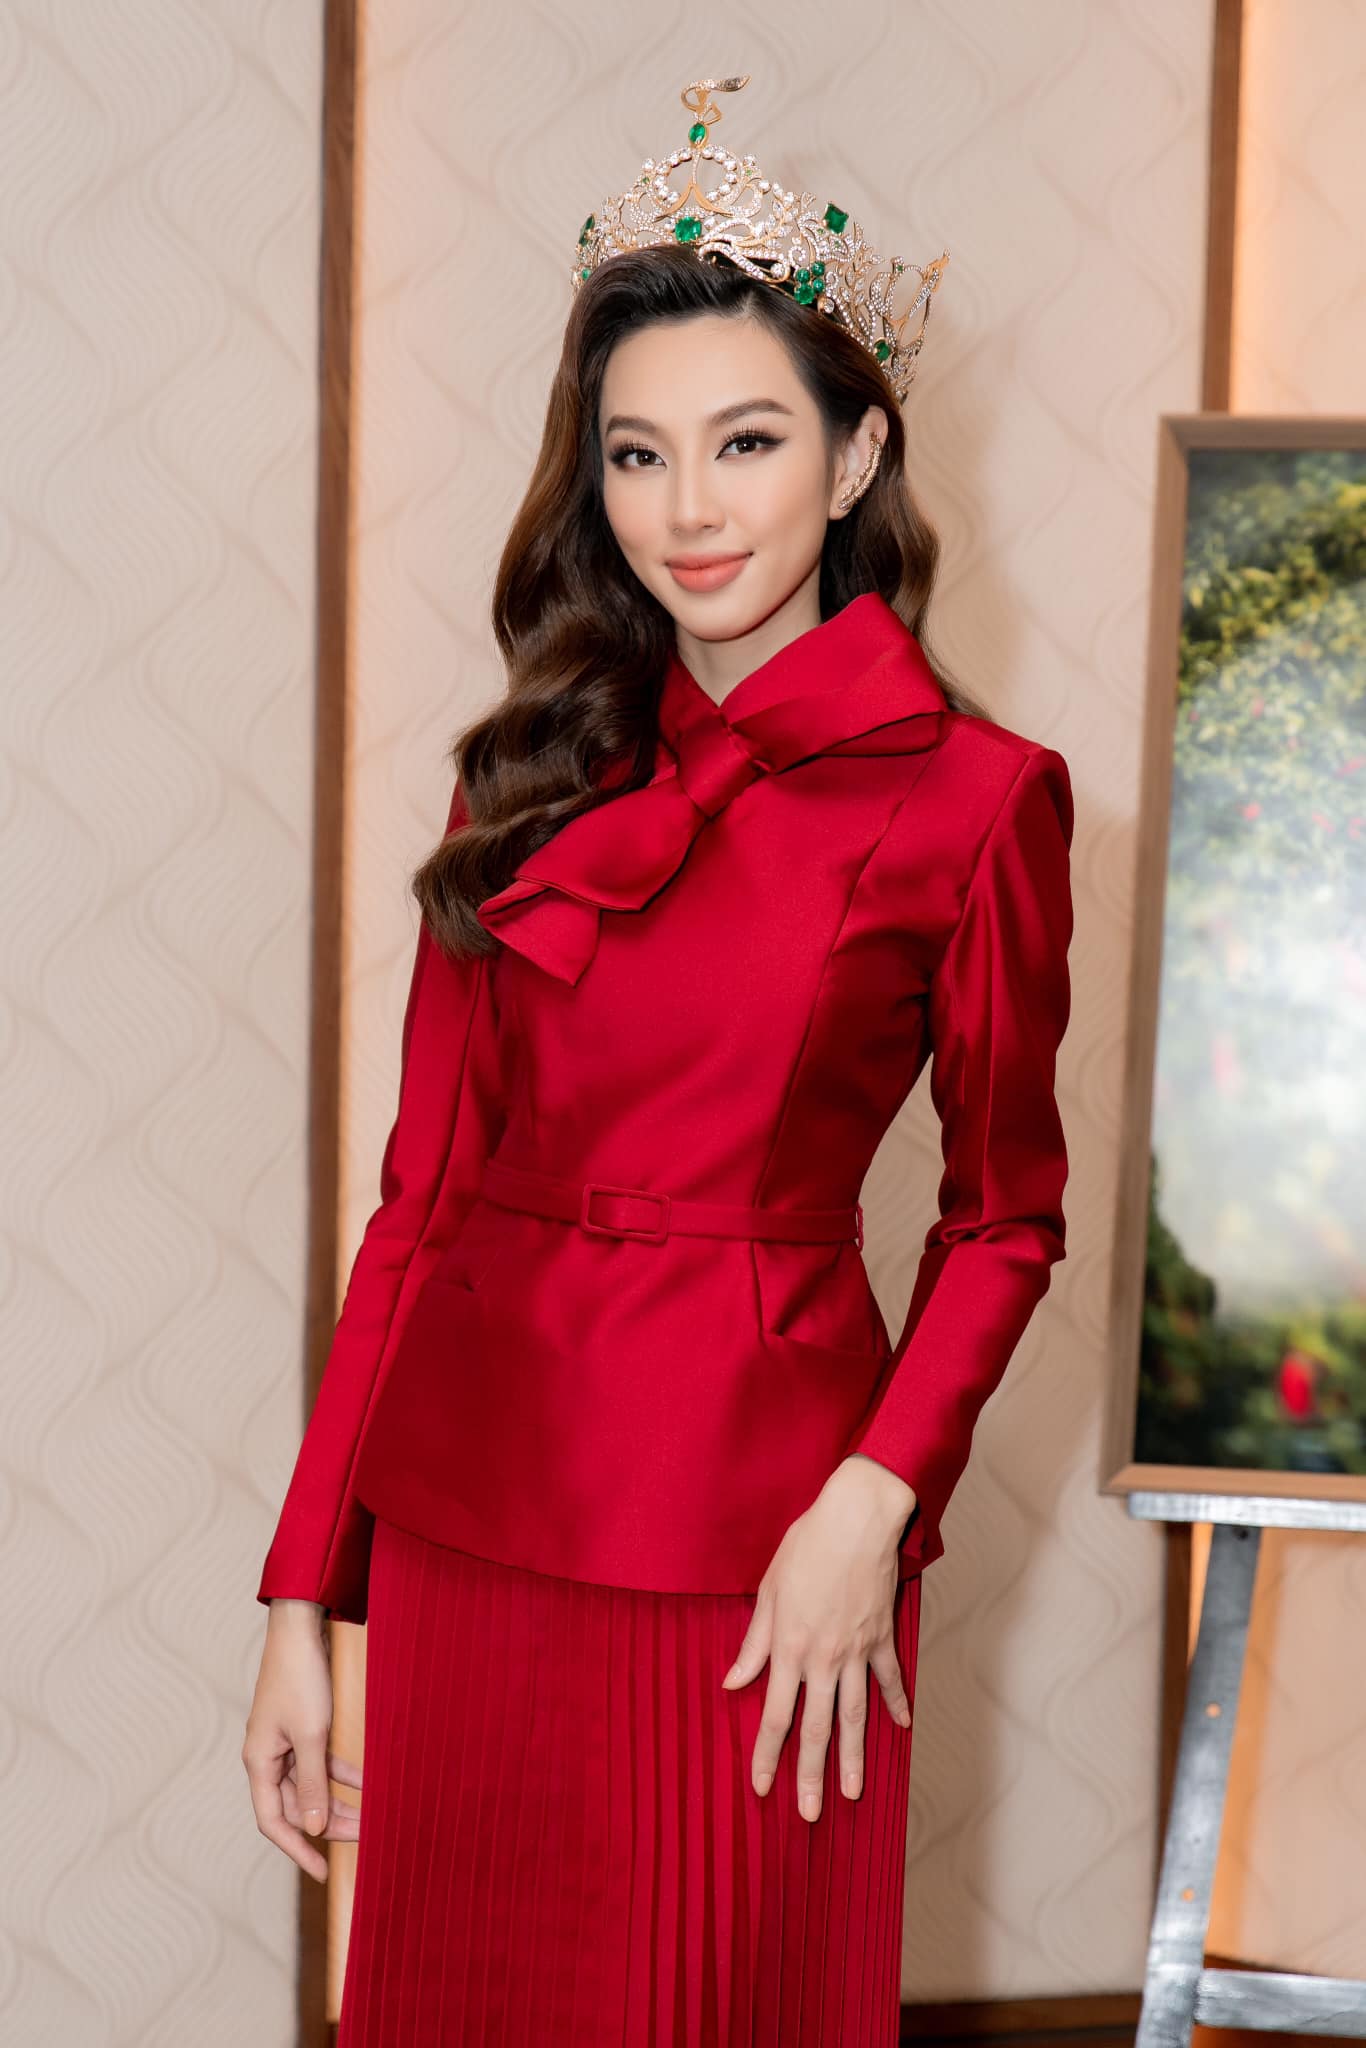 Không cần 'hở bạo' Hoa hậu Thùy Tiên vẫn cuốn hút nhờ thần thái 'sang chảnh' ngút ngàn, bộ trang phục được CĐM khen 'nức nở' - Ảnh 4